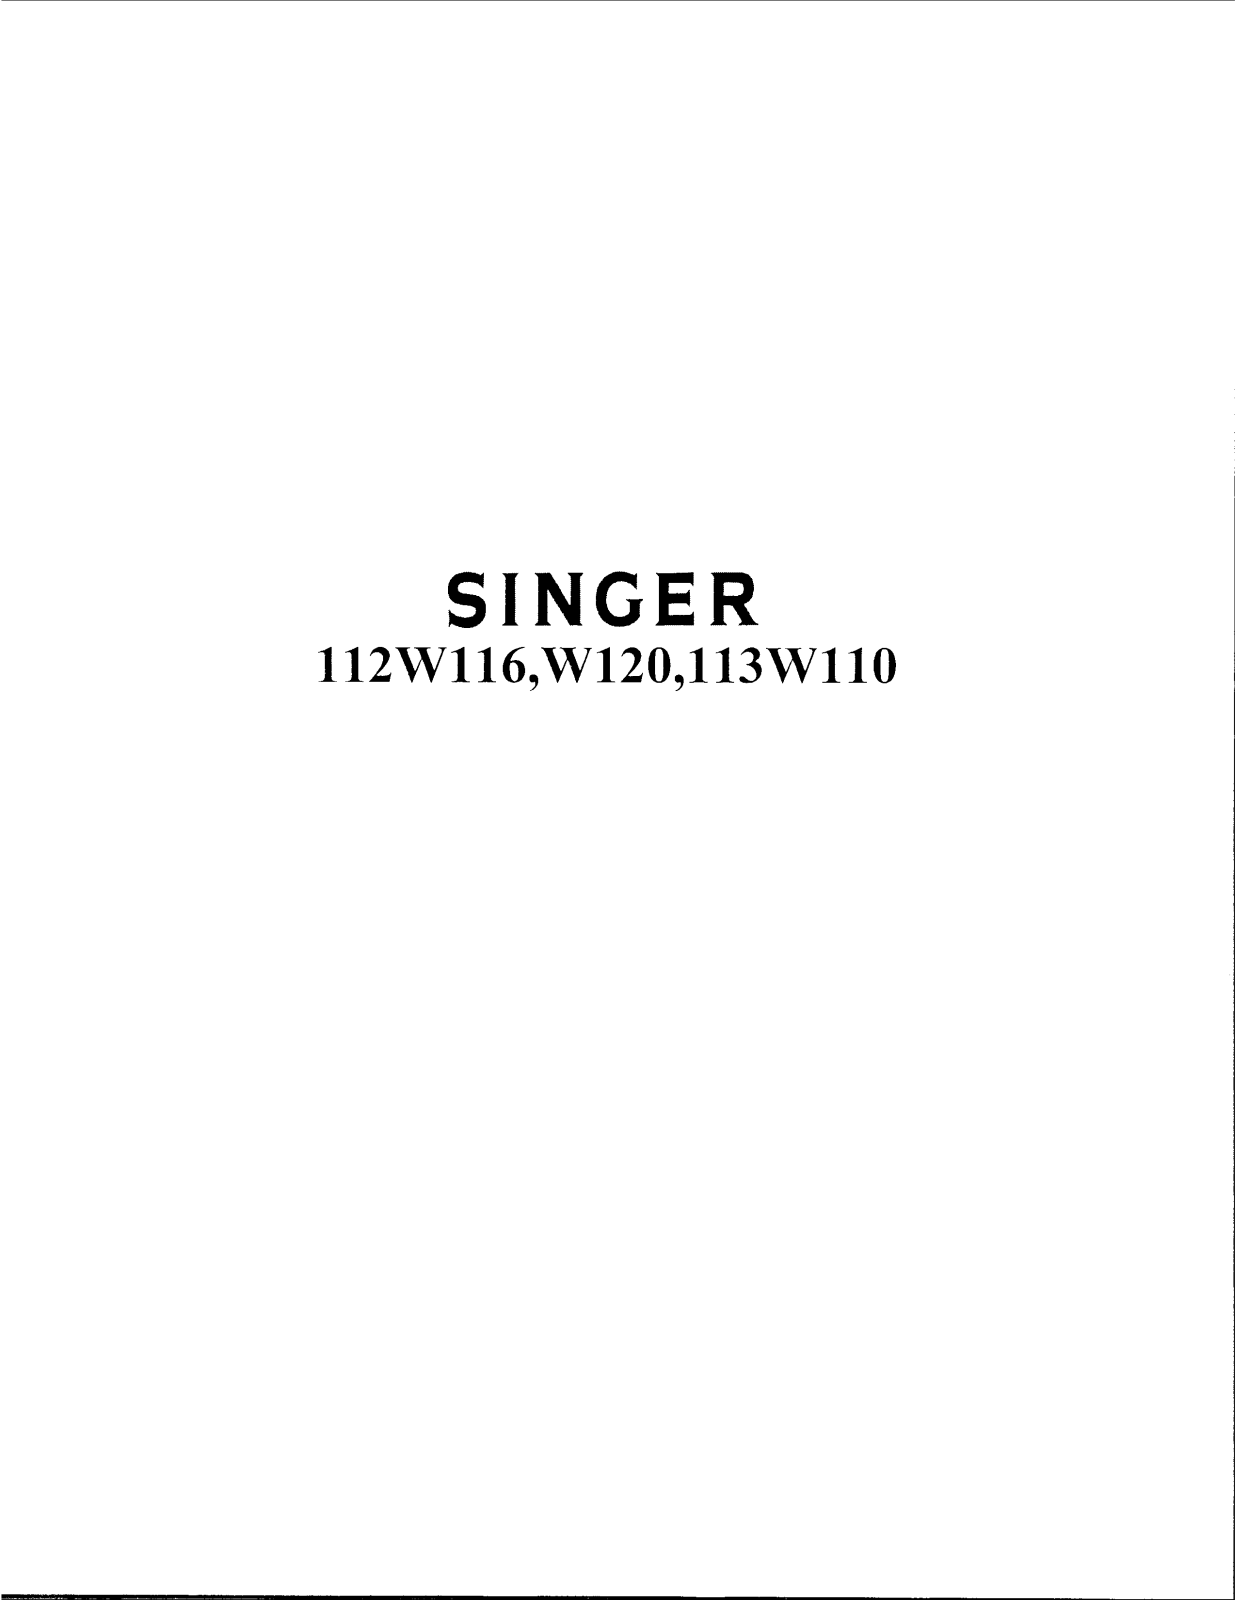 Singer 112W113, 112W120, 112W116, 112W110 Instruction Manual